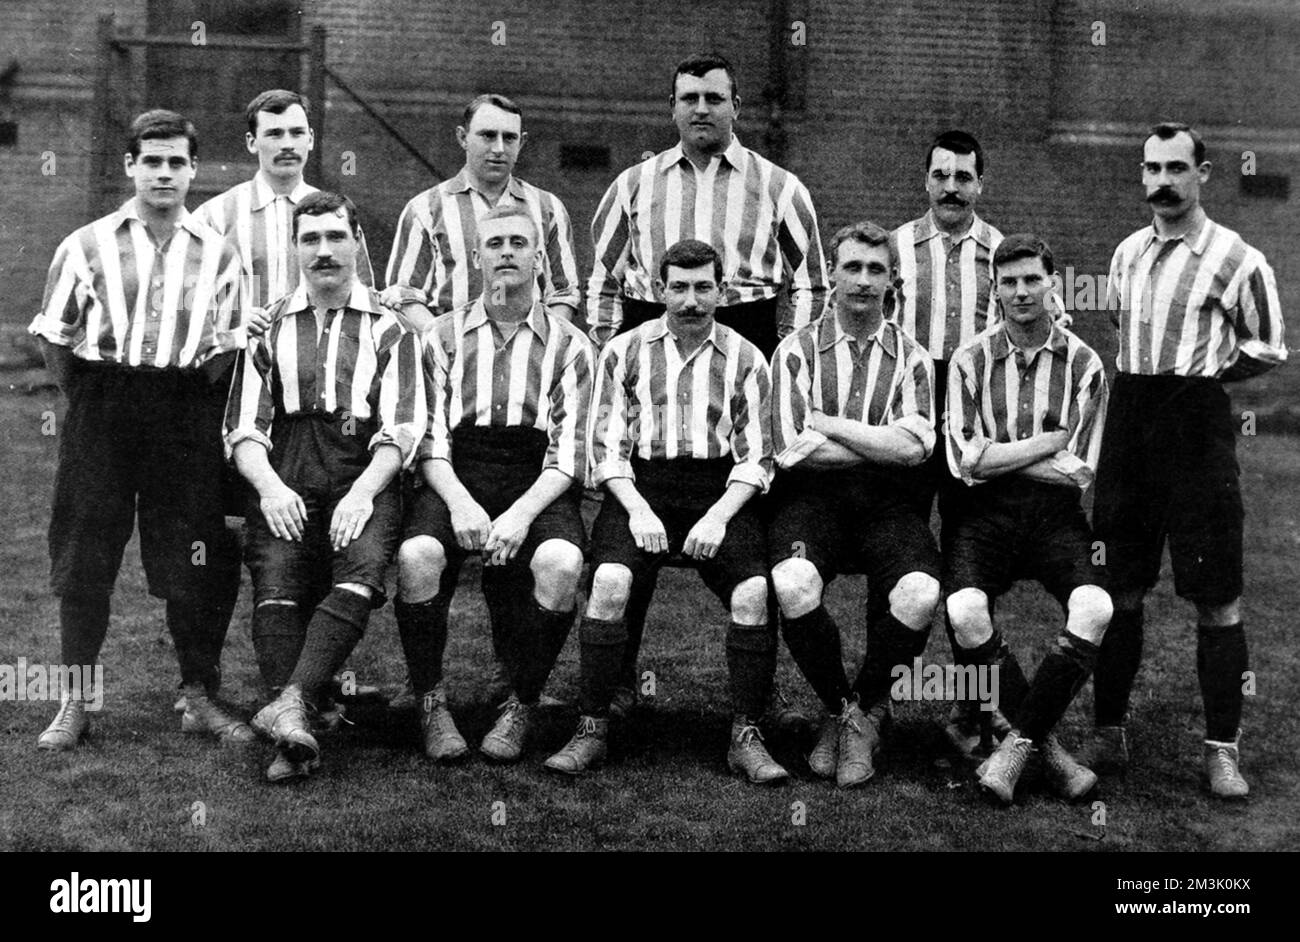 Foto des Fußballteams Sheffield United in der Saison 1901-1902. In dem Jahr haben sie Southampton geschlagen, um die F.A. zu gewinnen Becher. Die fotografierten Spieler waren: Stehend, von links nach rechts: B. Wilkinson, H. Johnson, H. Thickett, W. Foulke, P. Boyle, G.A. - Hedley. - Was? Sitzend, von links nach rechts: W. Bennett, A. Common, E. Needham (Kapitän), F. Priest, Bert Lipsham. Datum: 1902 Stockfoto